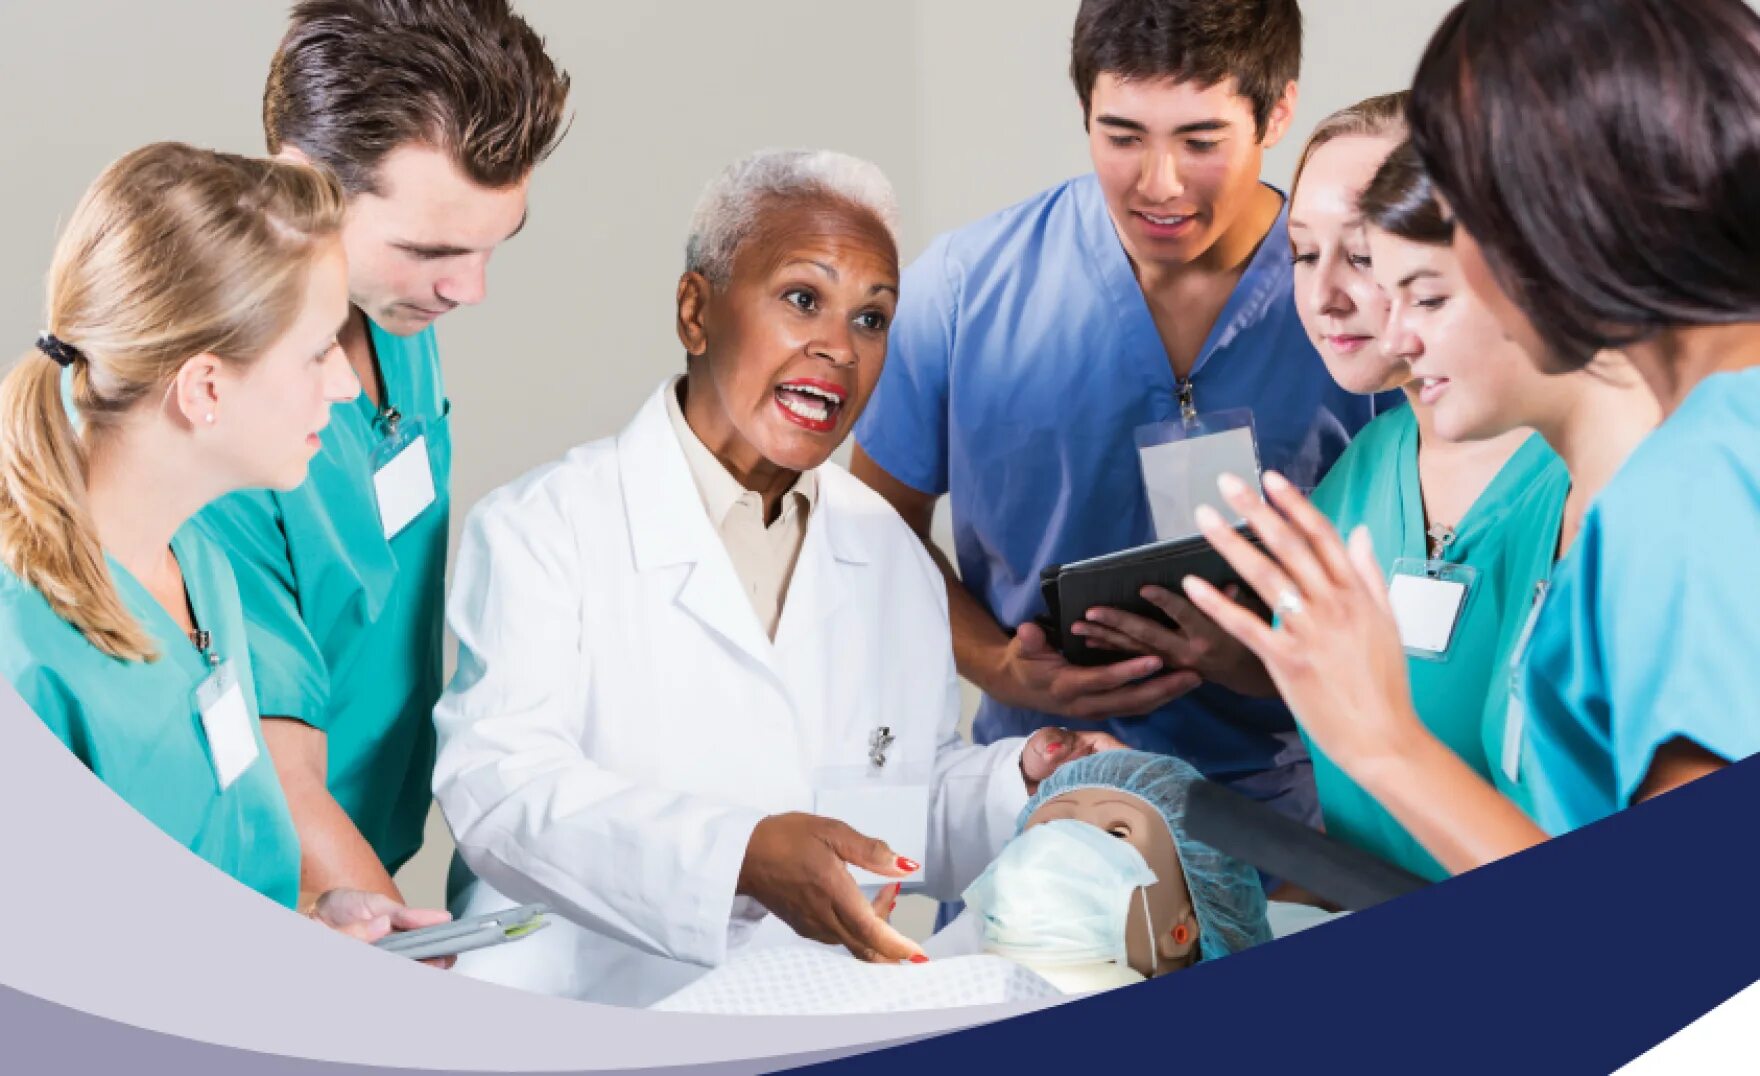 Медицинское образование 2015. Medical-Surgical Nursing. Медицинское образование в лизинг. Высшее медицинское образование. Медицинское образование в Дубае.